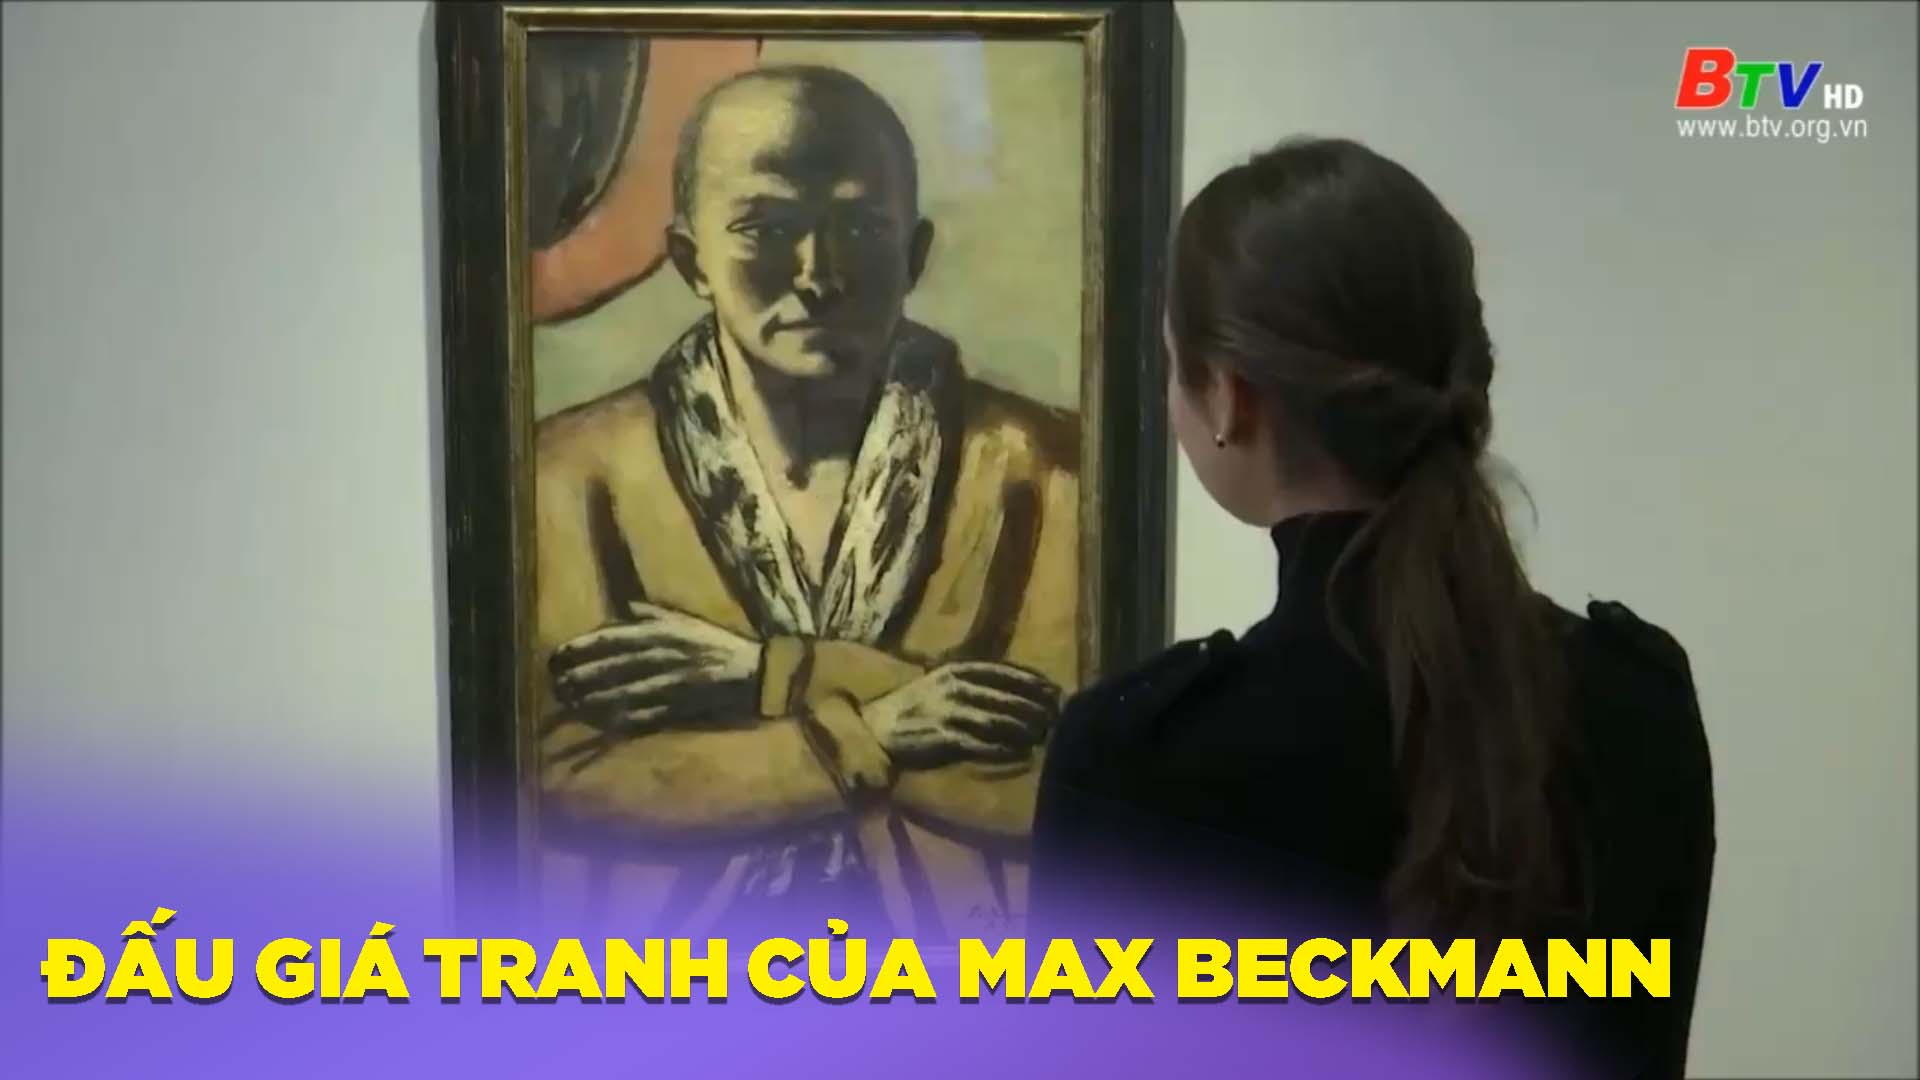 Hướng tới phiên đấu giá tranh của Max Beckamn